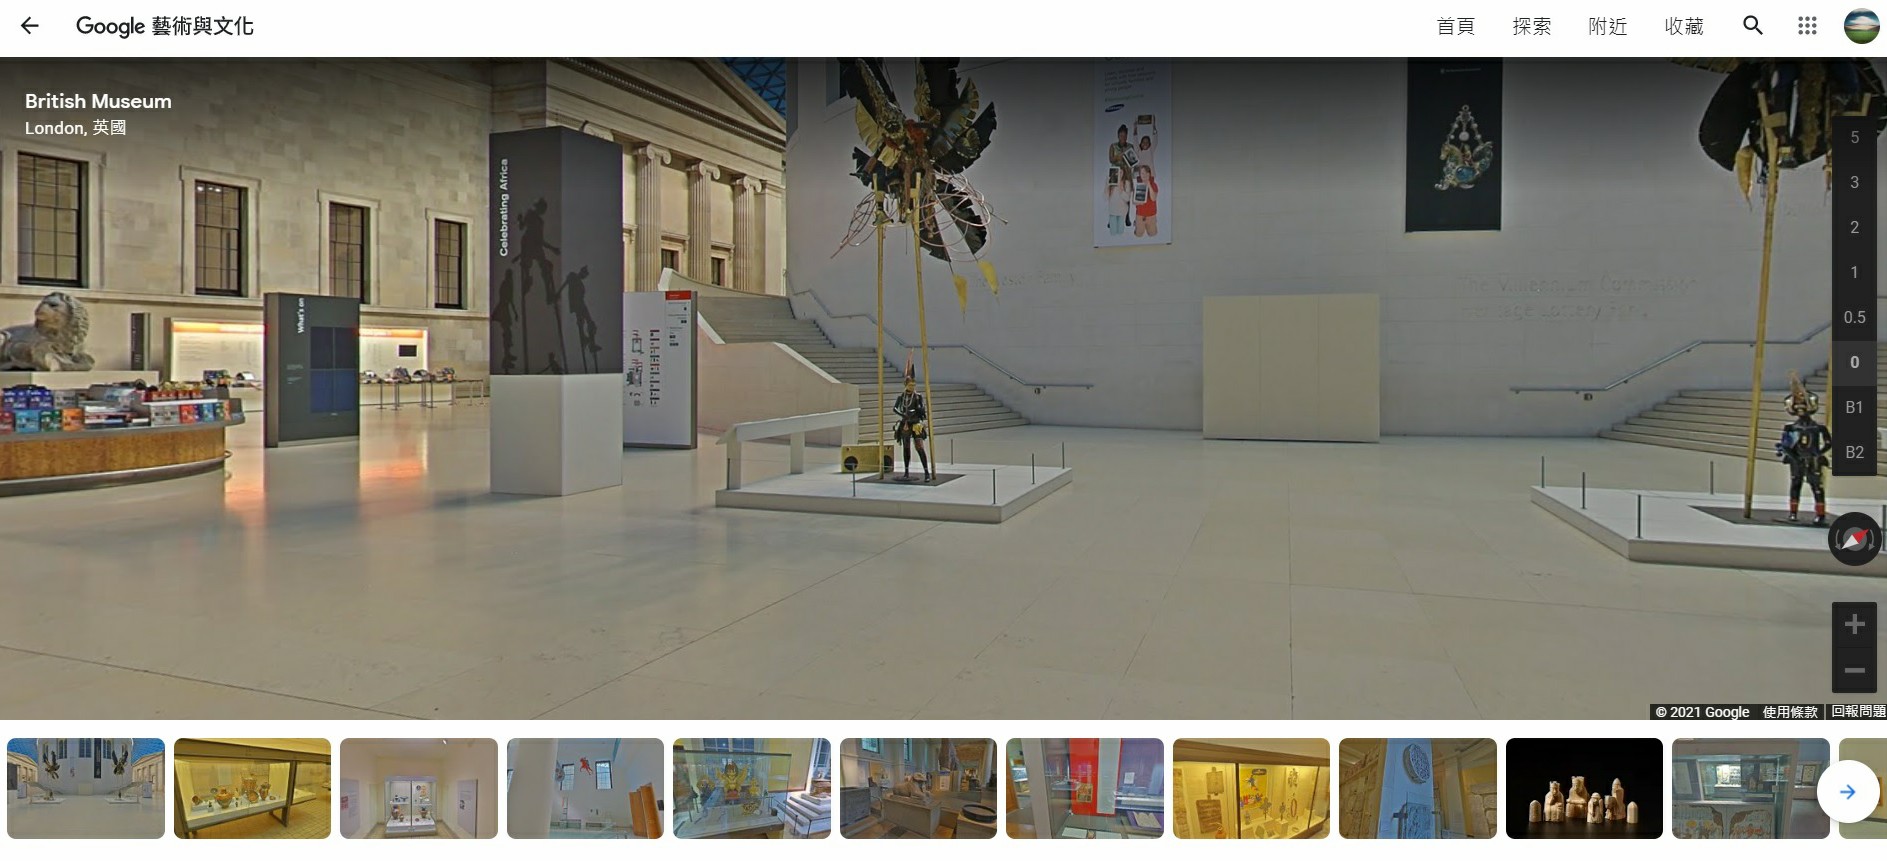 英國倫敦大英博物館,大英博物館,Google Arts & Culture,Google 藝術與文化,世界博物館,線上博物館